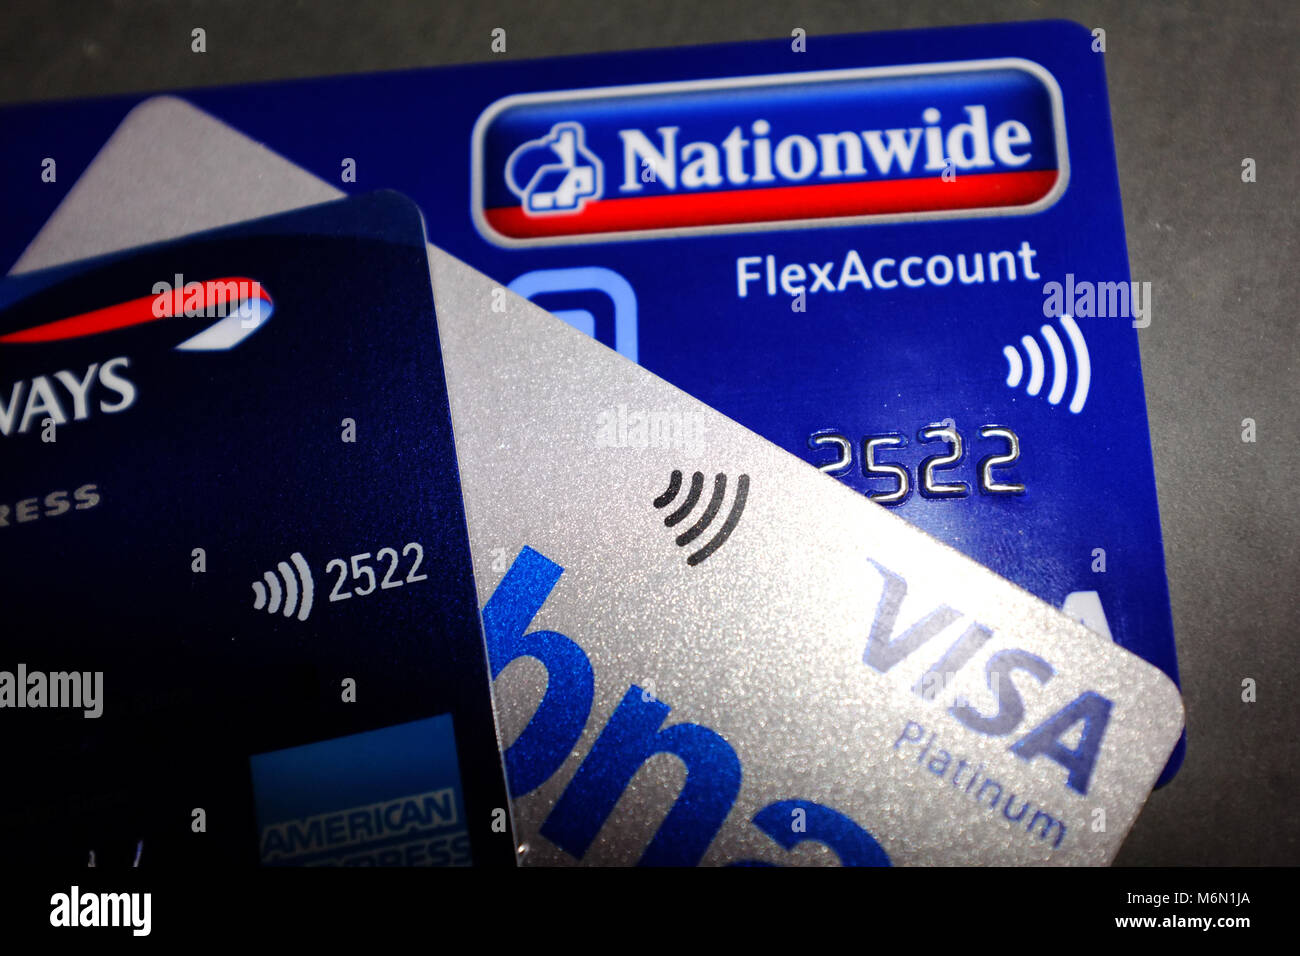 Contacto símbolos en Nationwide, MBNA Visa y American Express tarjetas de  crédito y débito Fotografía de stock - Alamy